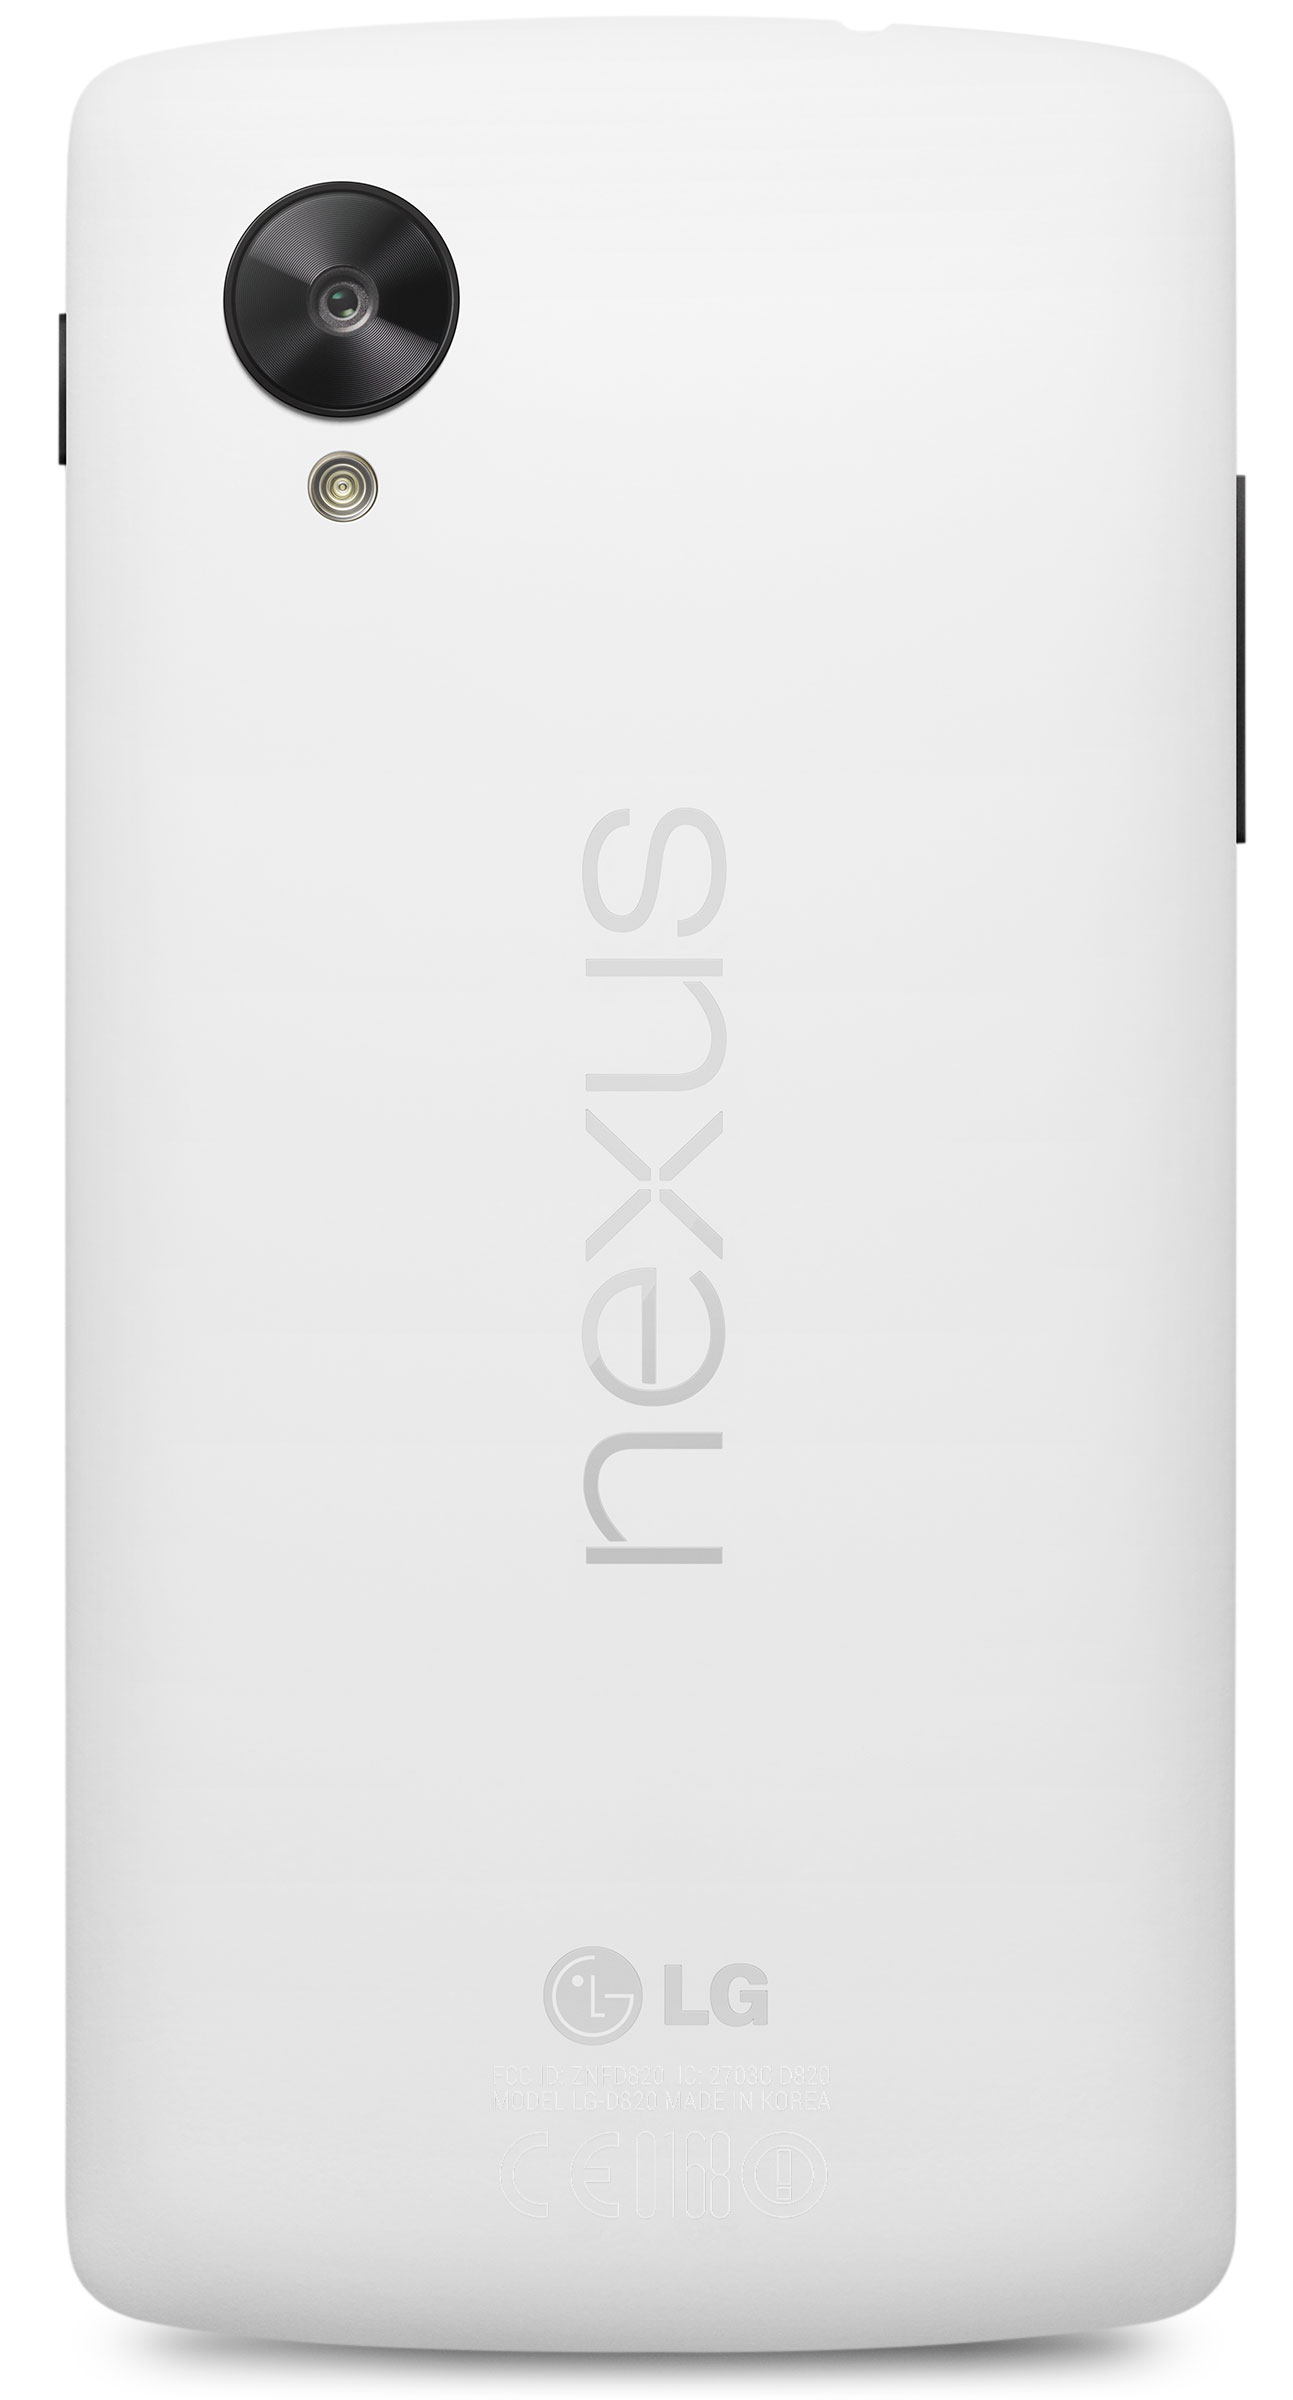 Immagine pubblicata in relazione al seguente contenuto: Google lancia lo smartphone Nexus 5 e l'OS Android 4.4 KitKat | Nome immagine: news20294_Google-Nexus-5_8.jpg